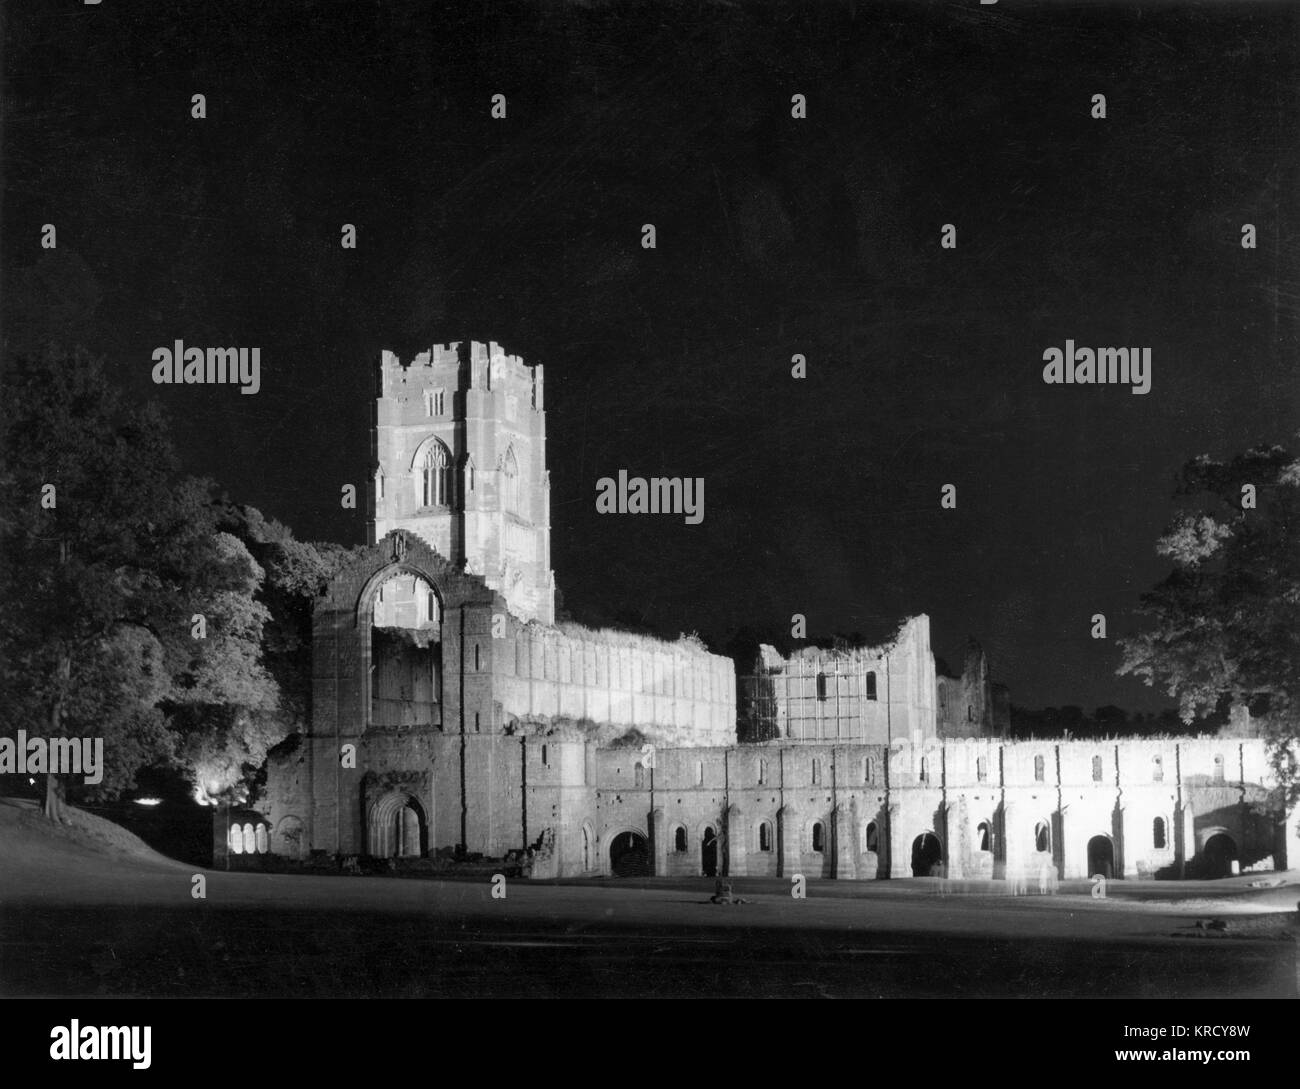 Fountains Abbey, Yorkshire, Inglaterra, una abadía cisterciense que fue fundado en 1132. Aquí iluminadas por la noche. Fecha: siglo xii Foto de stock